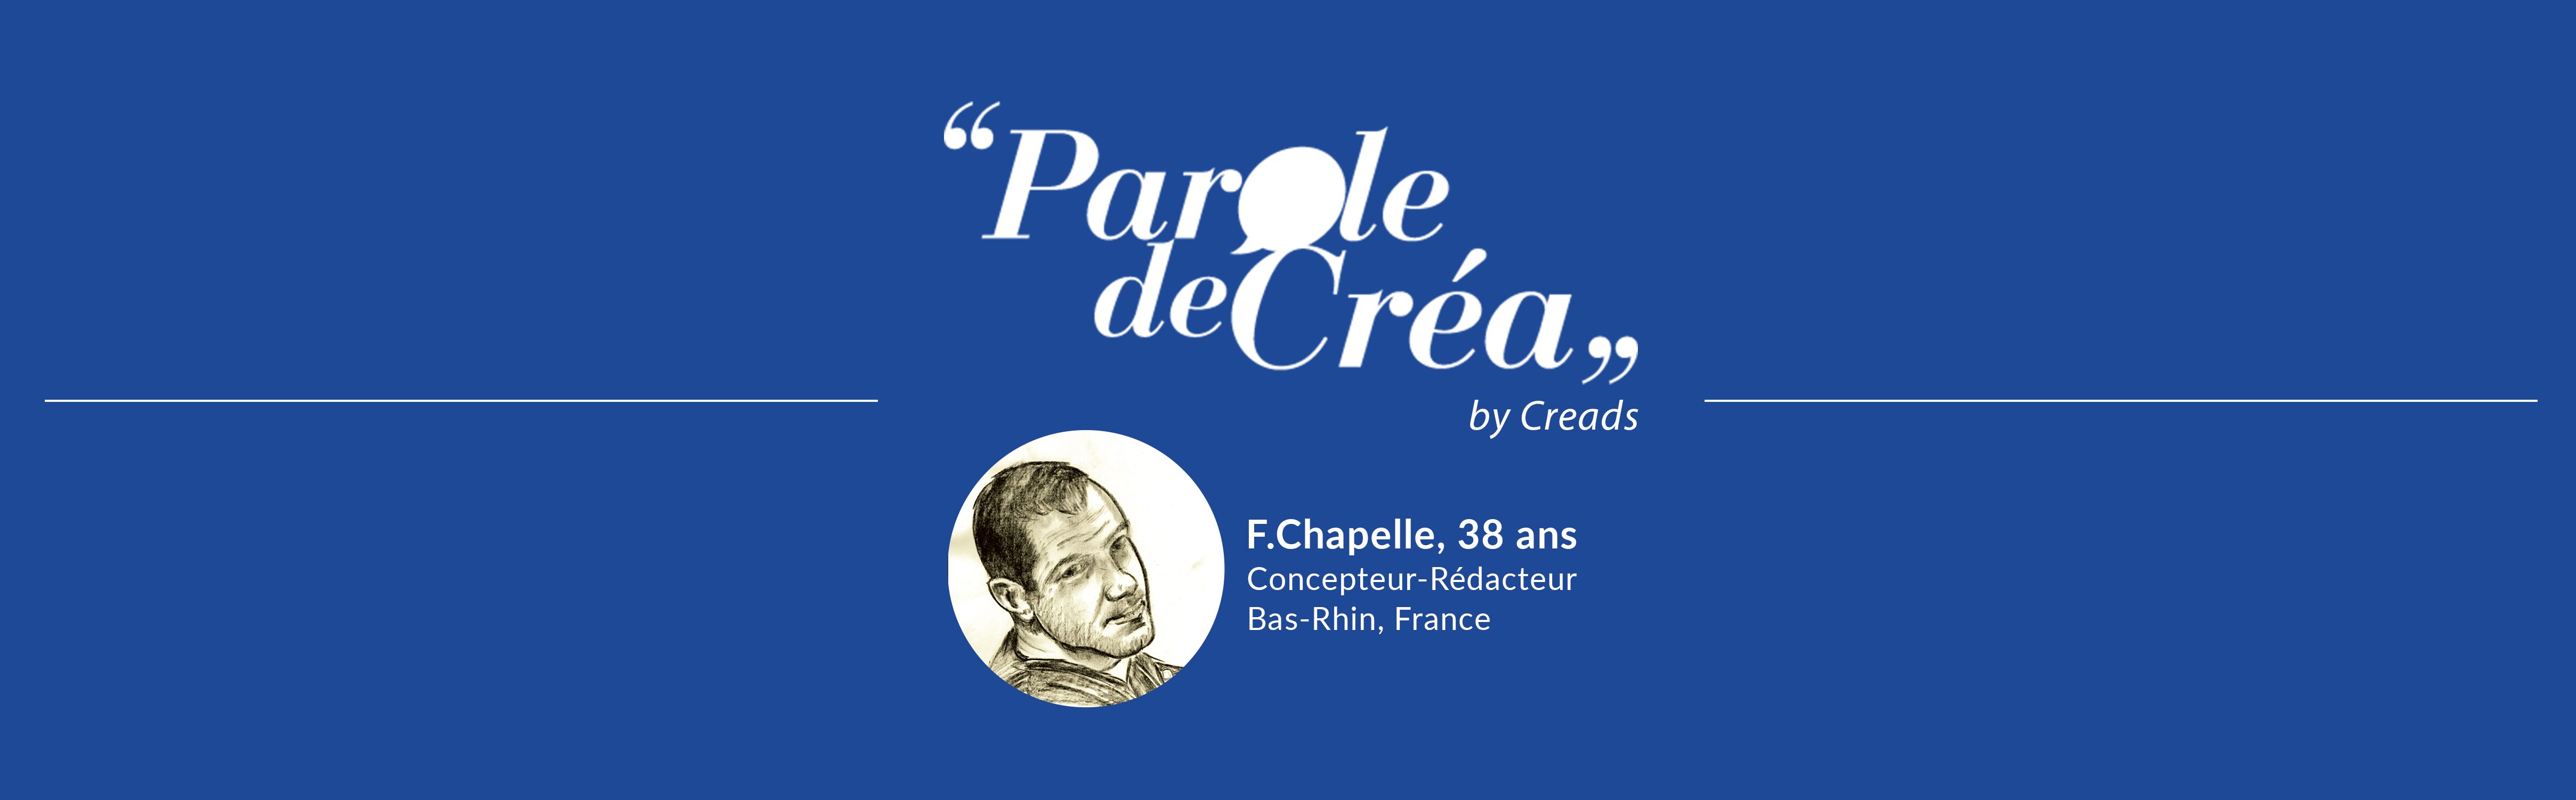 Paroles de F.Chapelle, 38 ans, concepteur-rédacteur